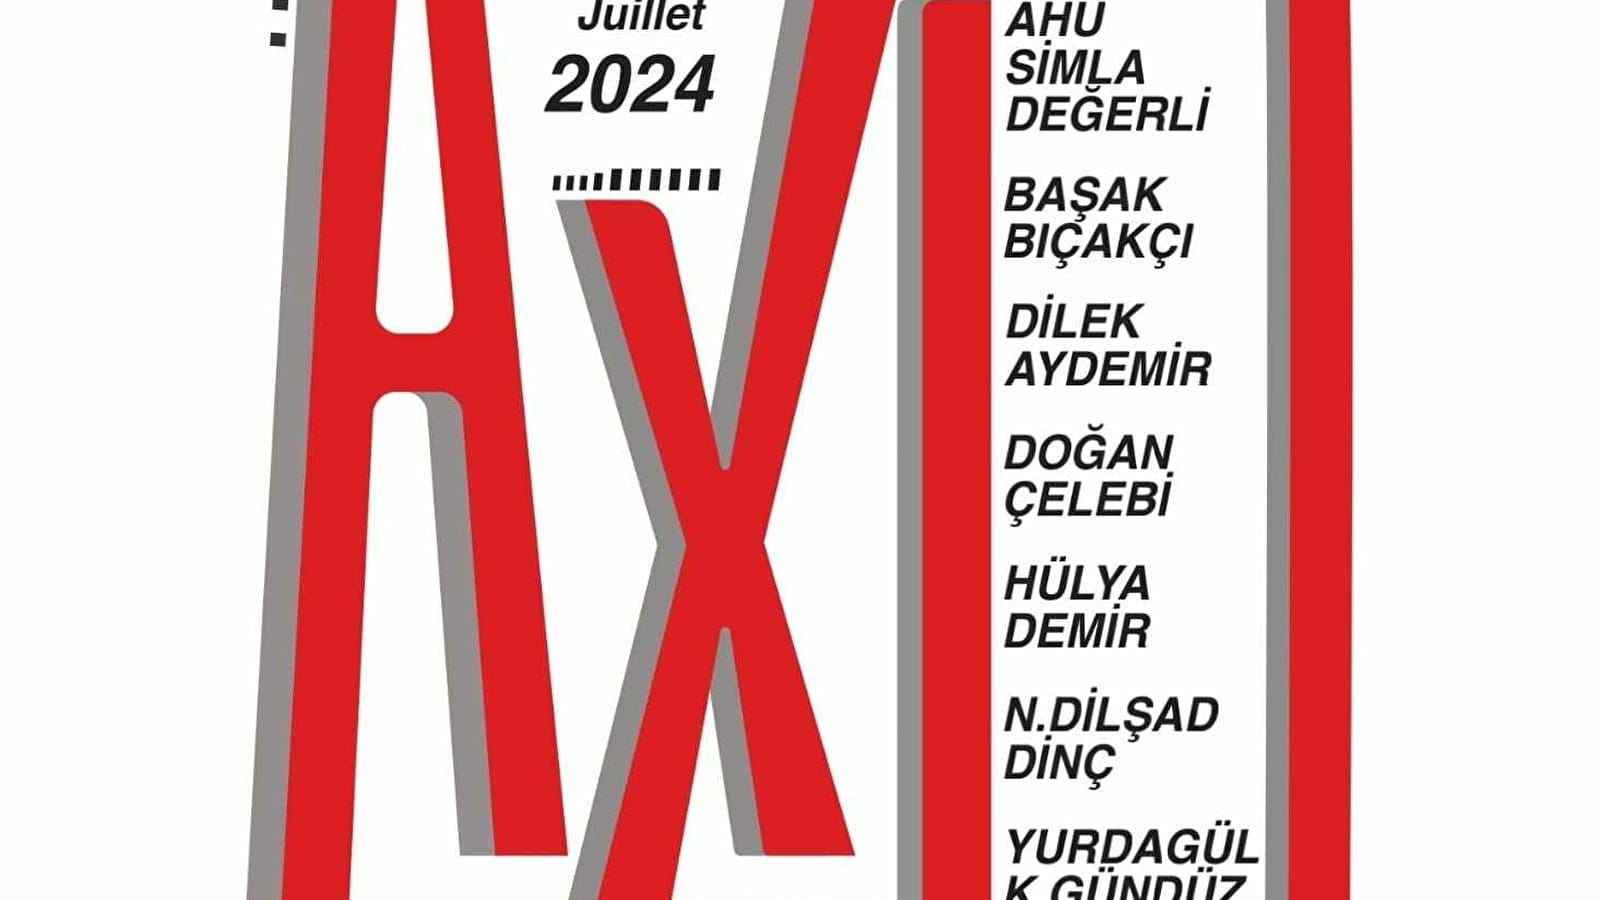 Exposition mixte : Axis